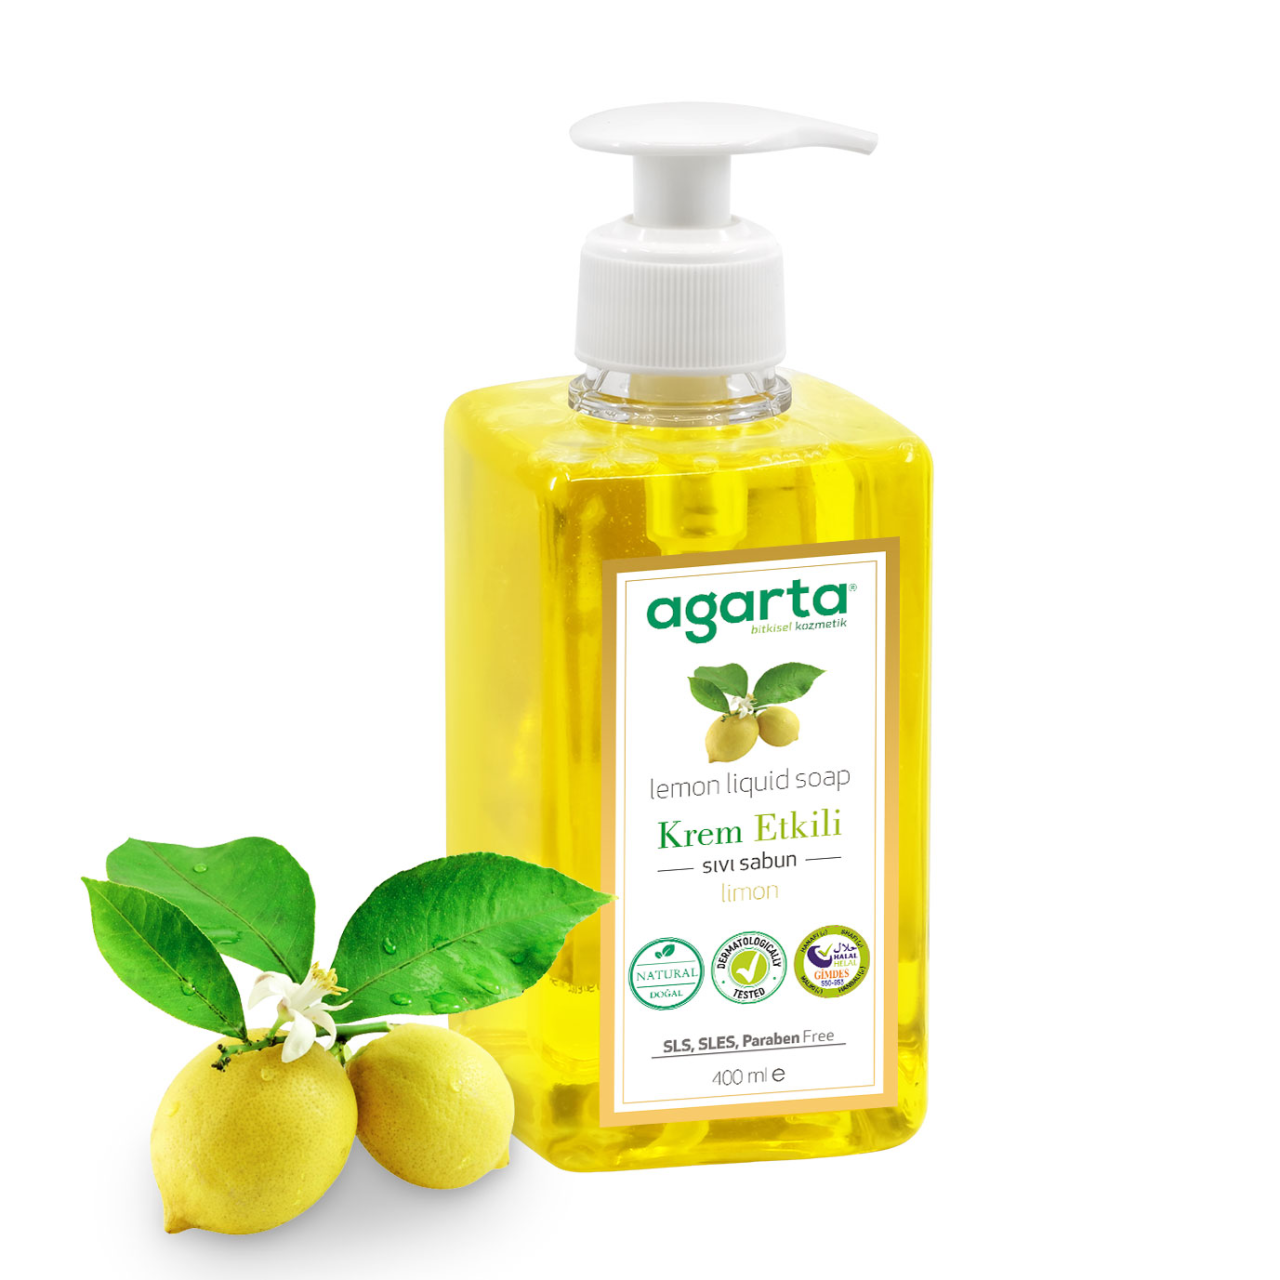 Agarta Krem Etkili Limonlu Sıvı Sabun Limon 400ml